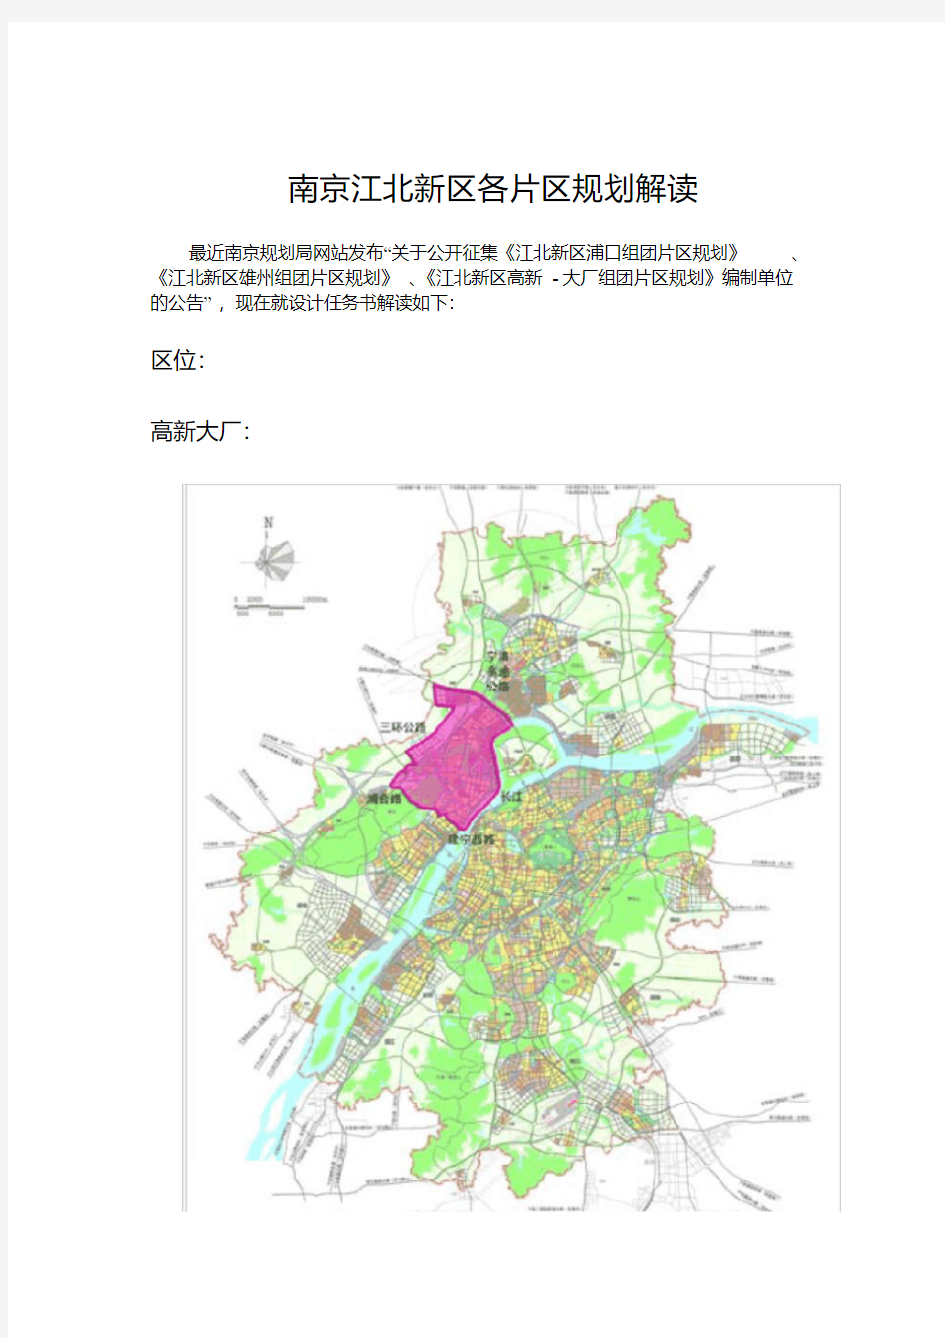 南京江北新区各片区规划解读